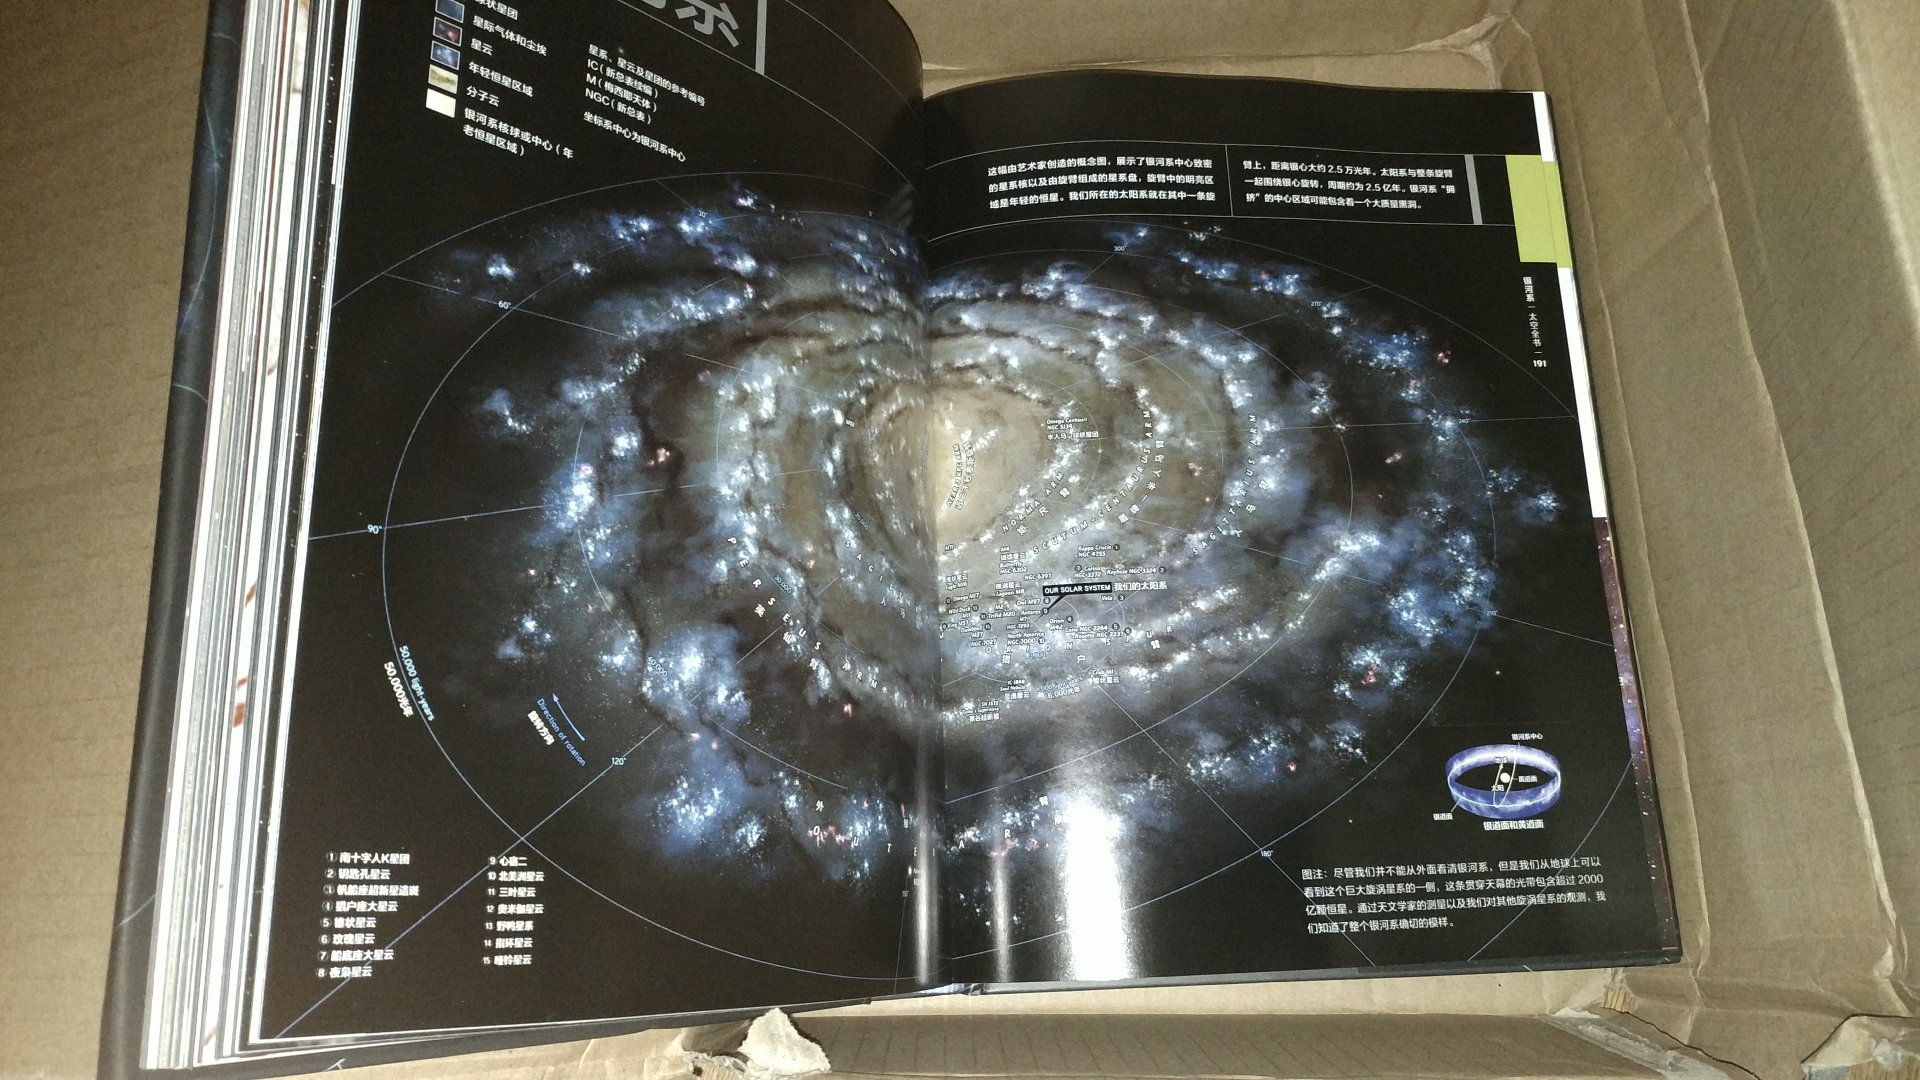 非常漂亮的天文科普书籍，大量精美的天文图片和照片，将天文涉及的各个方面都进行了讲解，算是入门书籍吧。